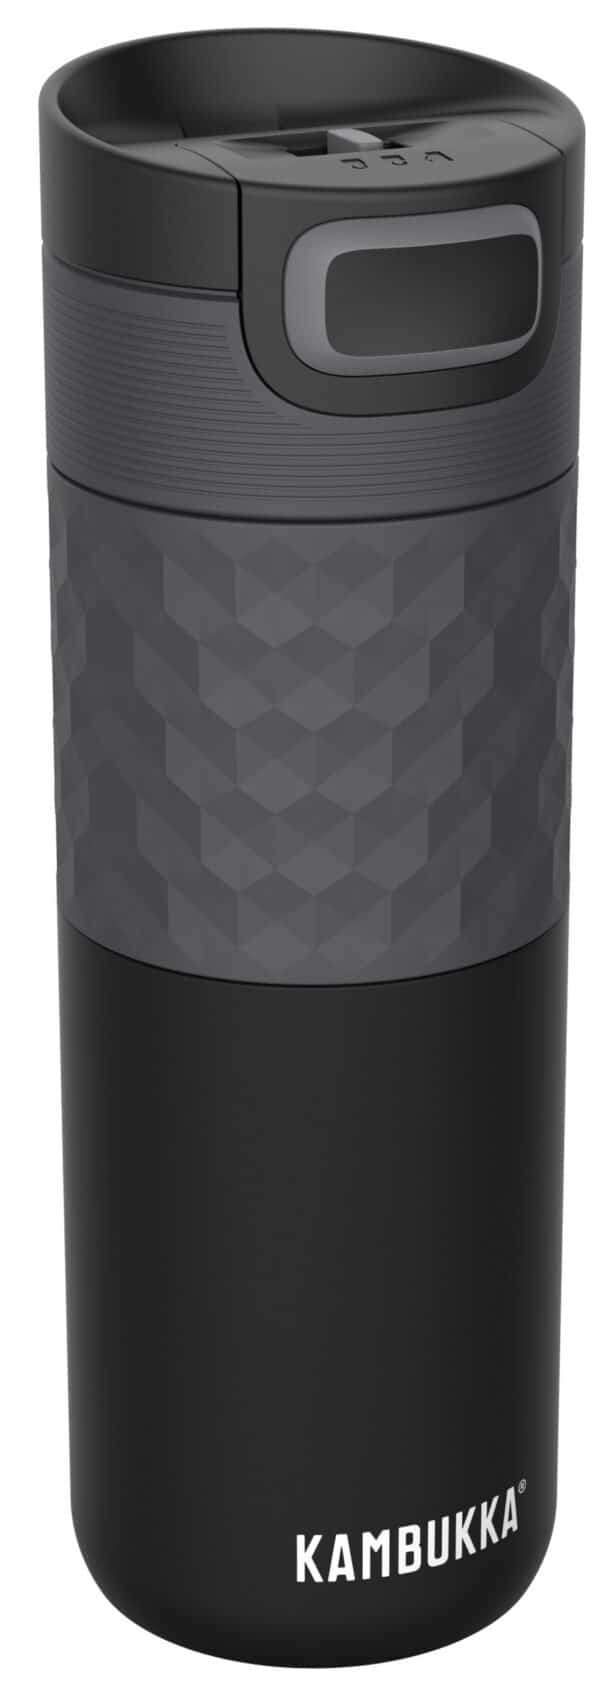 בקבוק שתיה תרמי שחור 500 מ"ל Black Steel קמבוקה￼ Kambukka Etna Grip